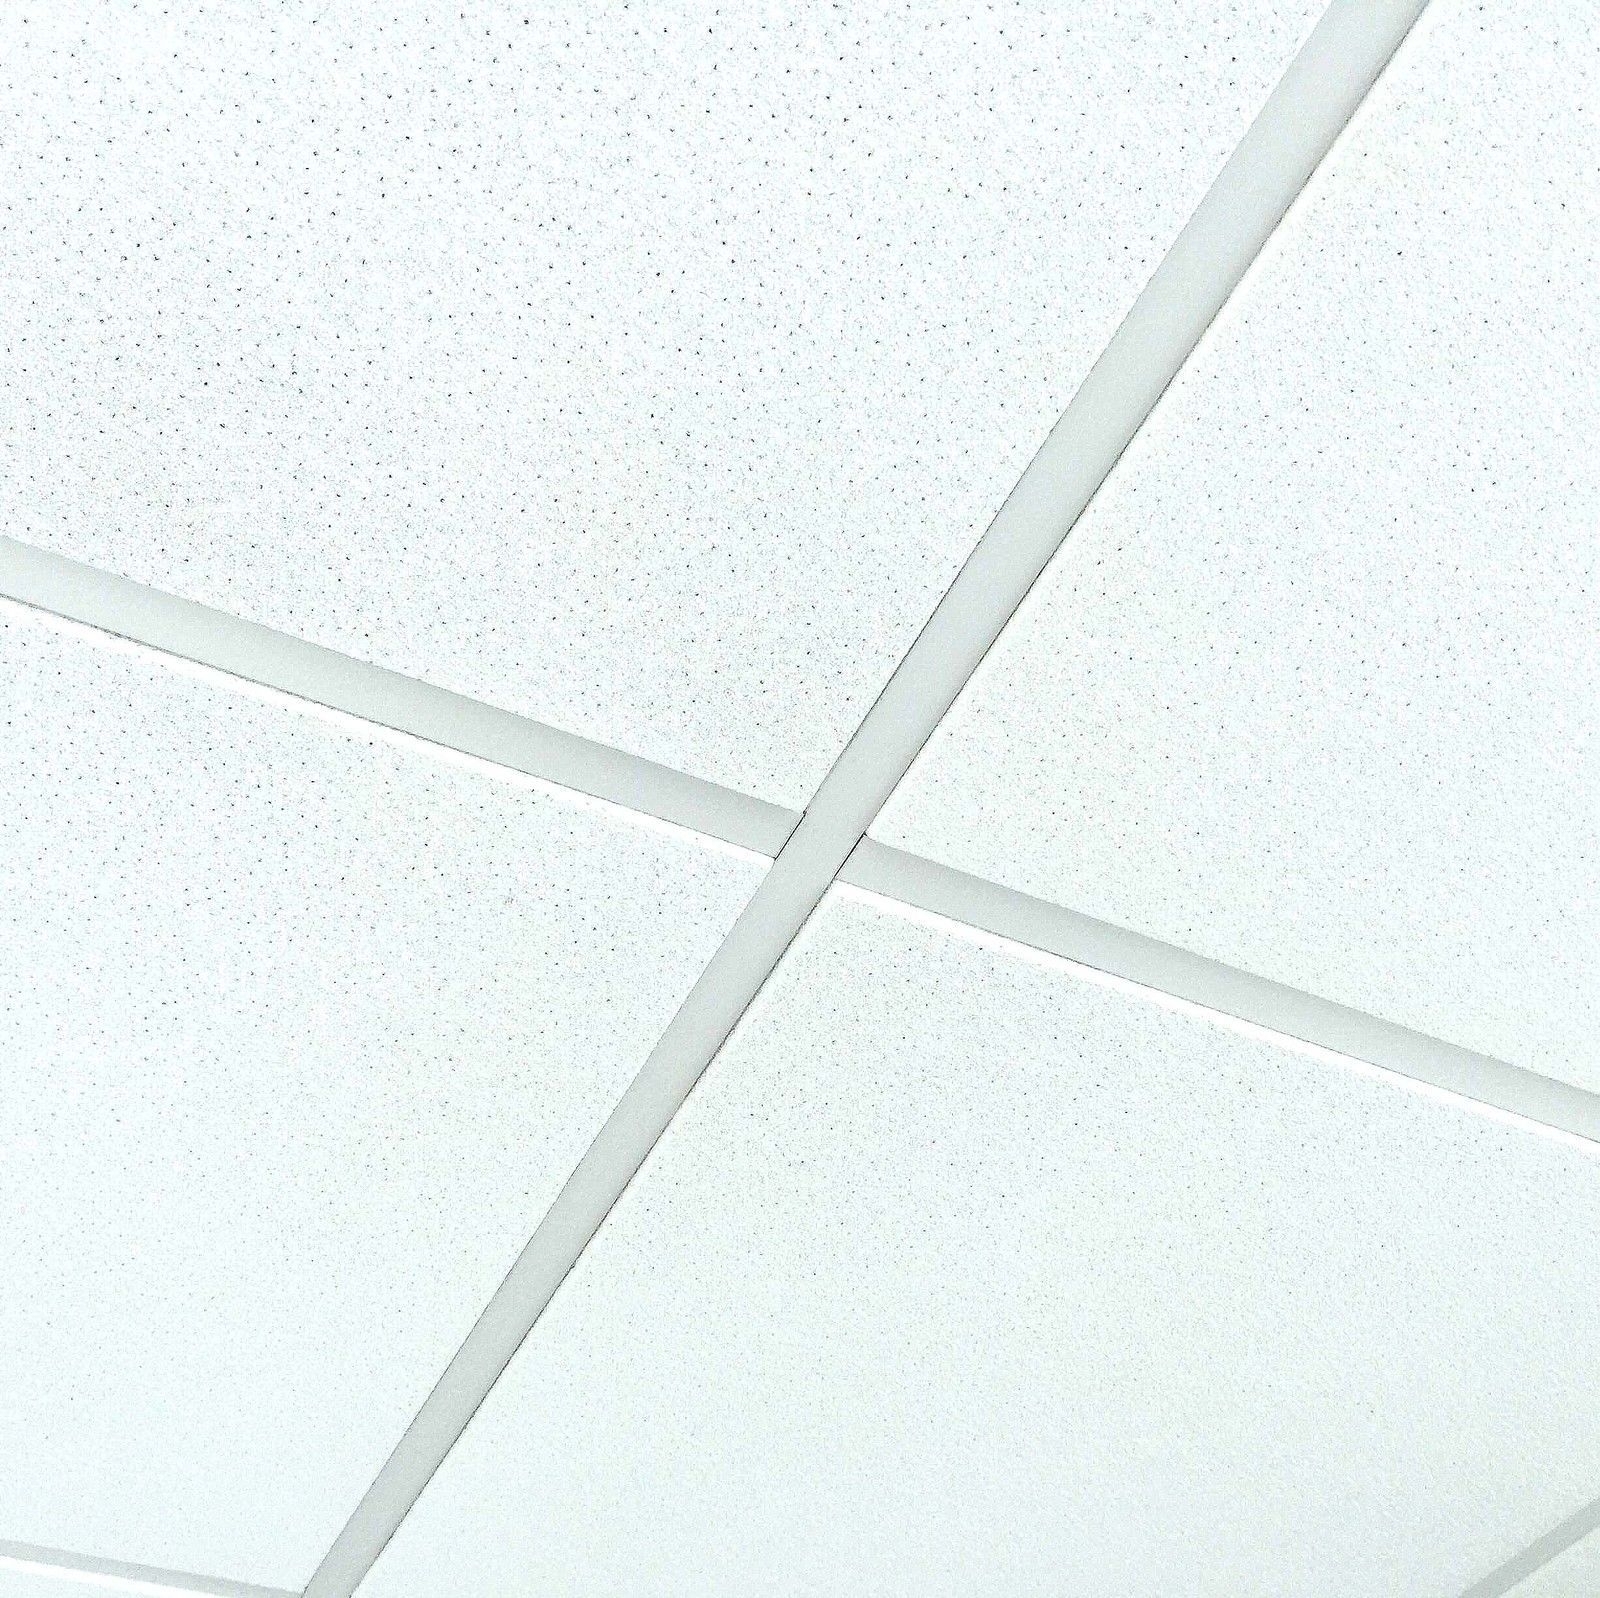 Tegular Edge Ceiling Tile Cutter